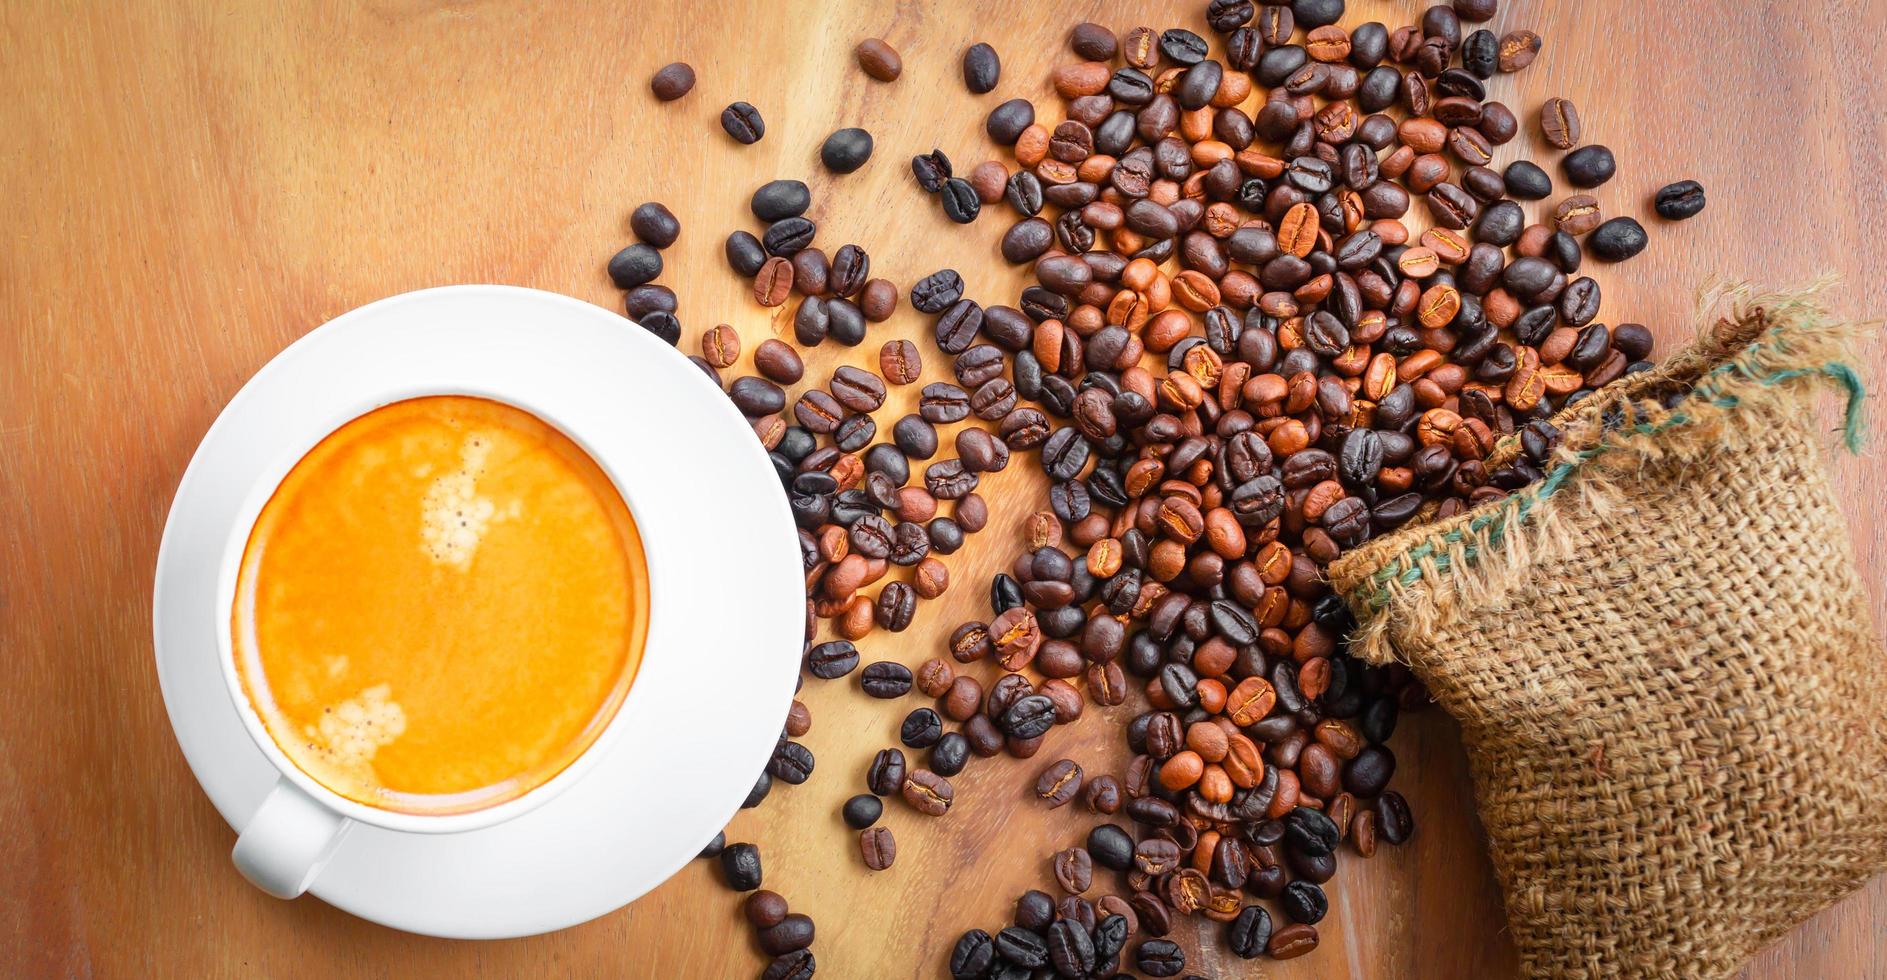 vista superior da xícara de café tem espuma dourada e grãos de café misturados ou misturados em um saco marrom no fundo de madeira foto